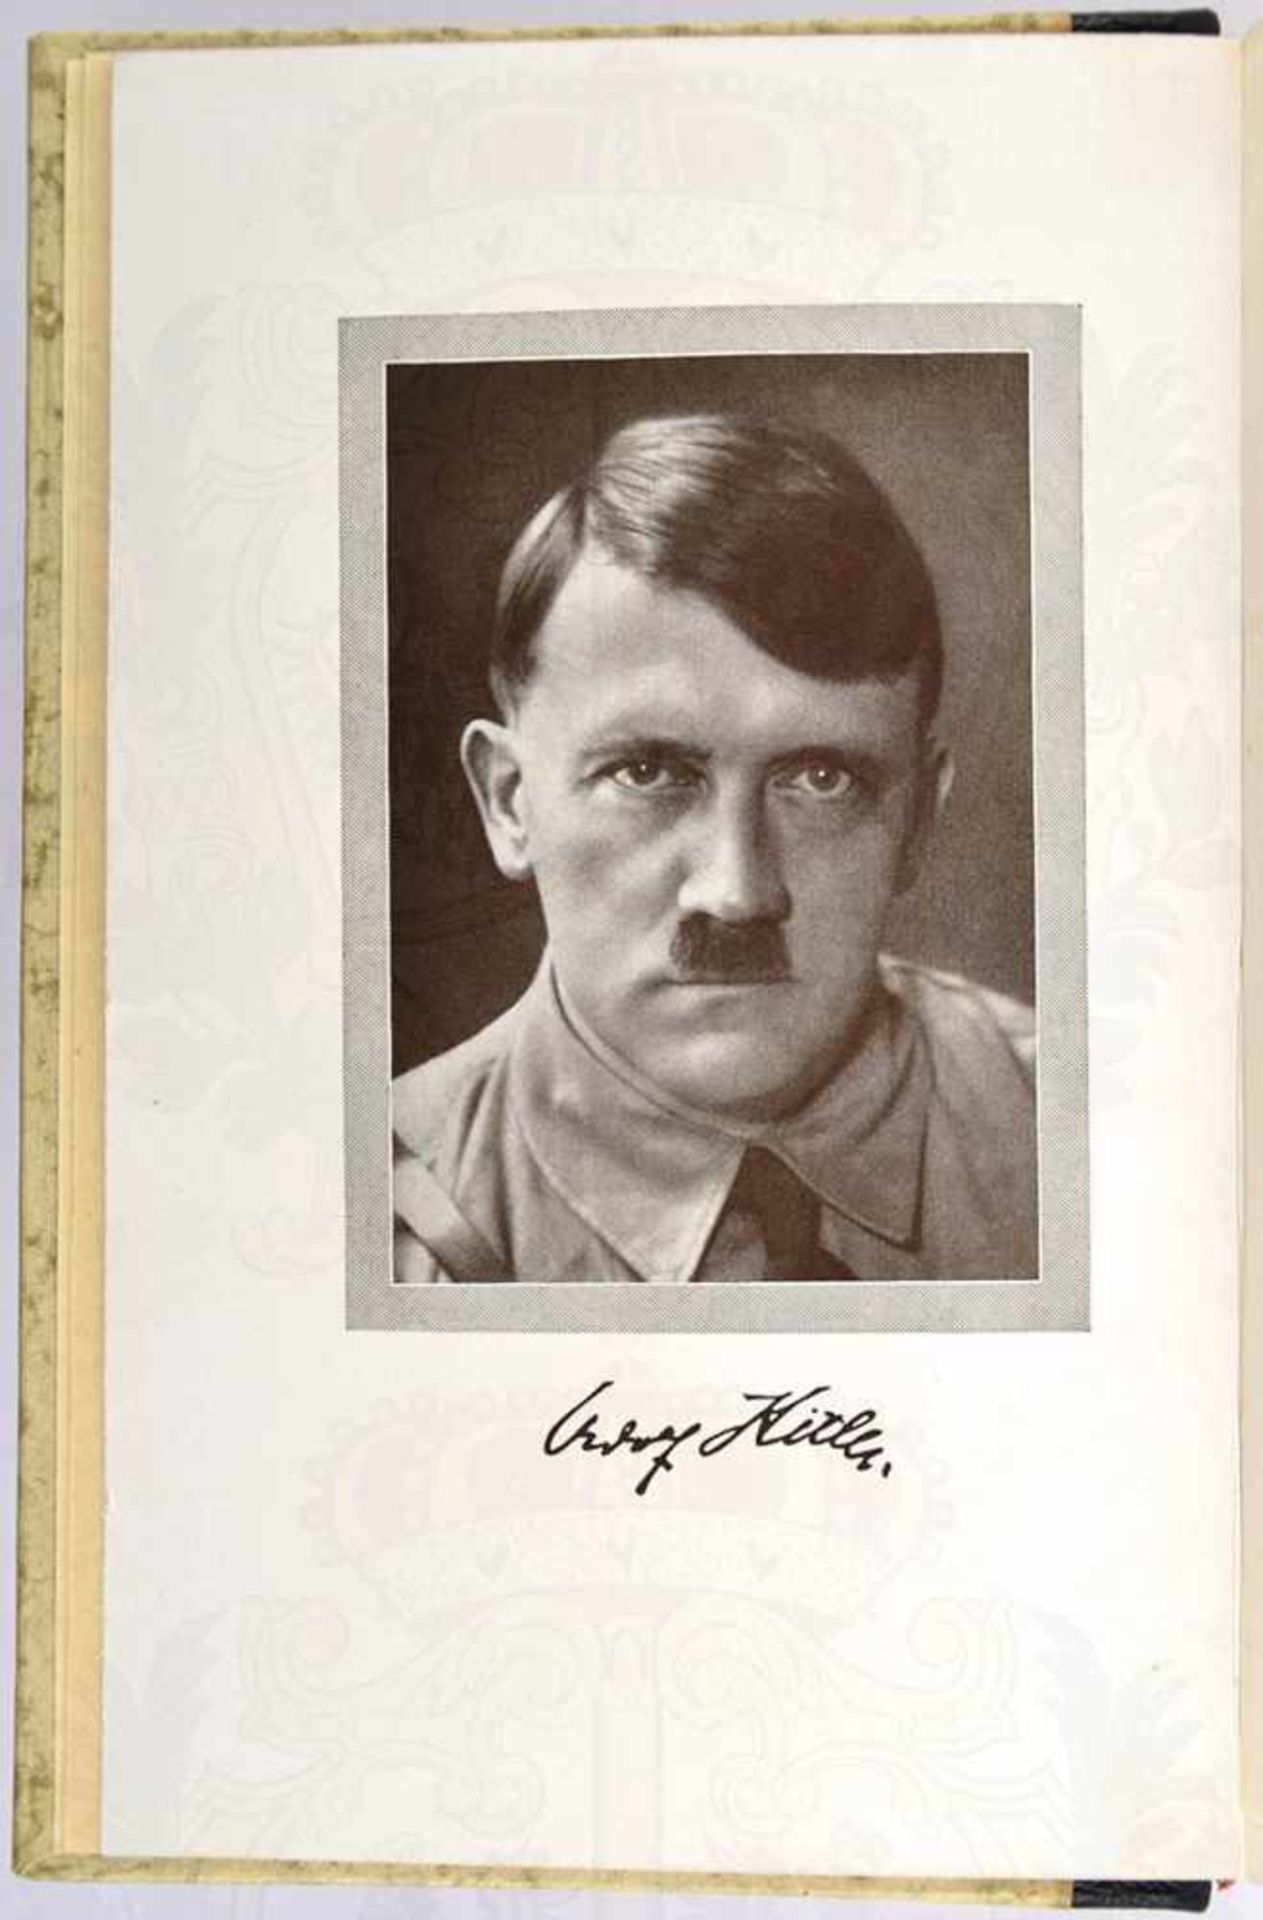 MEIN KAMPF, Adolf Hitler, Hochzeitsausgabe, Eher Verlag, 1938, Porträtbild, 781 S., goldgepr. - Bild 3 aus 4